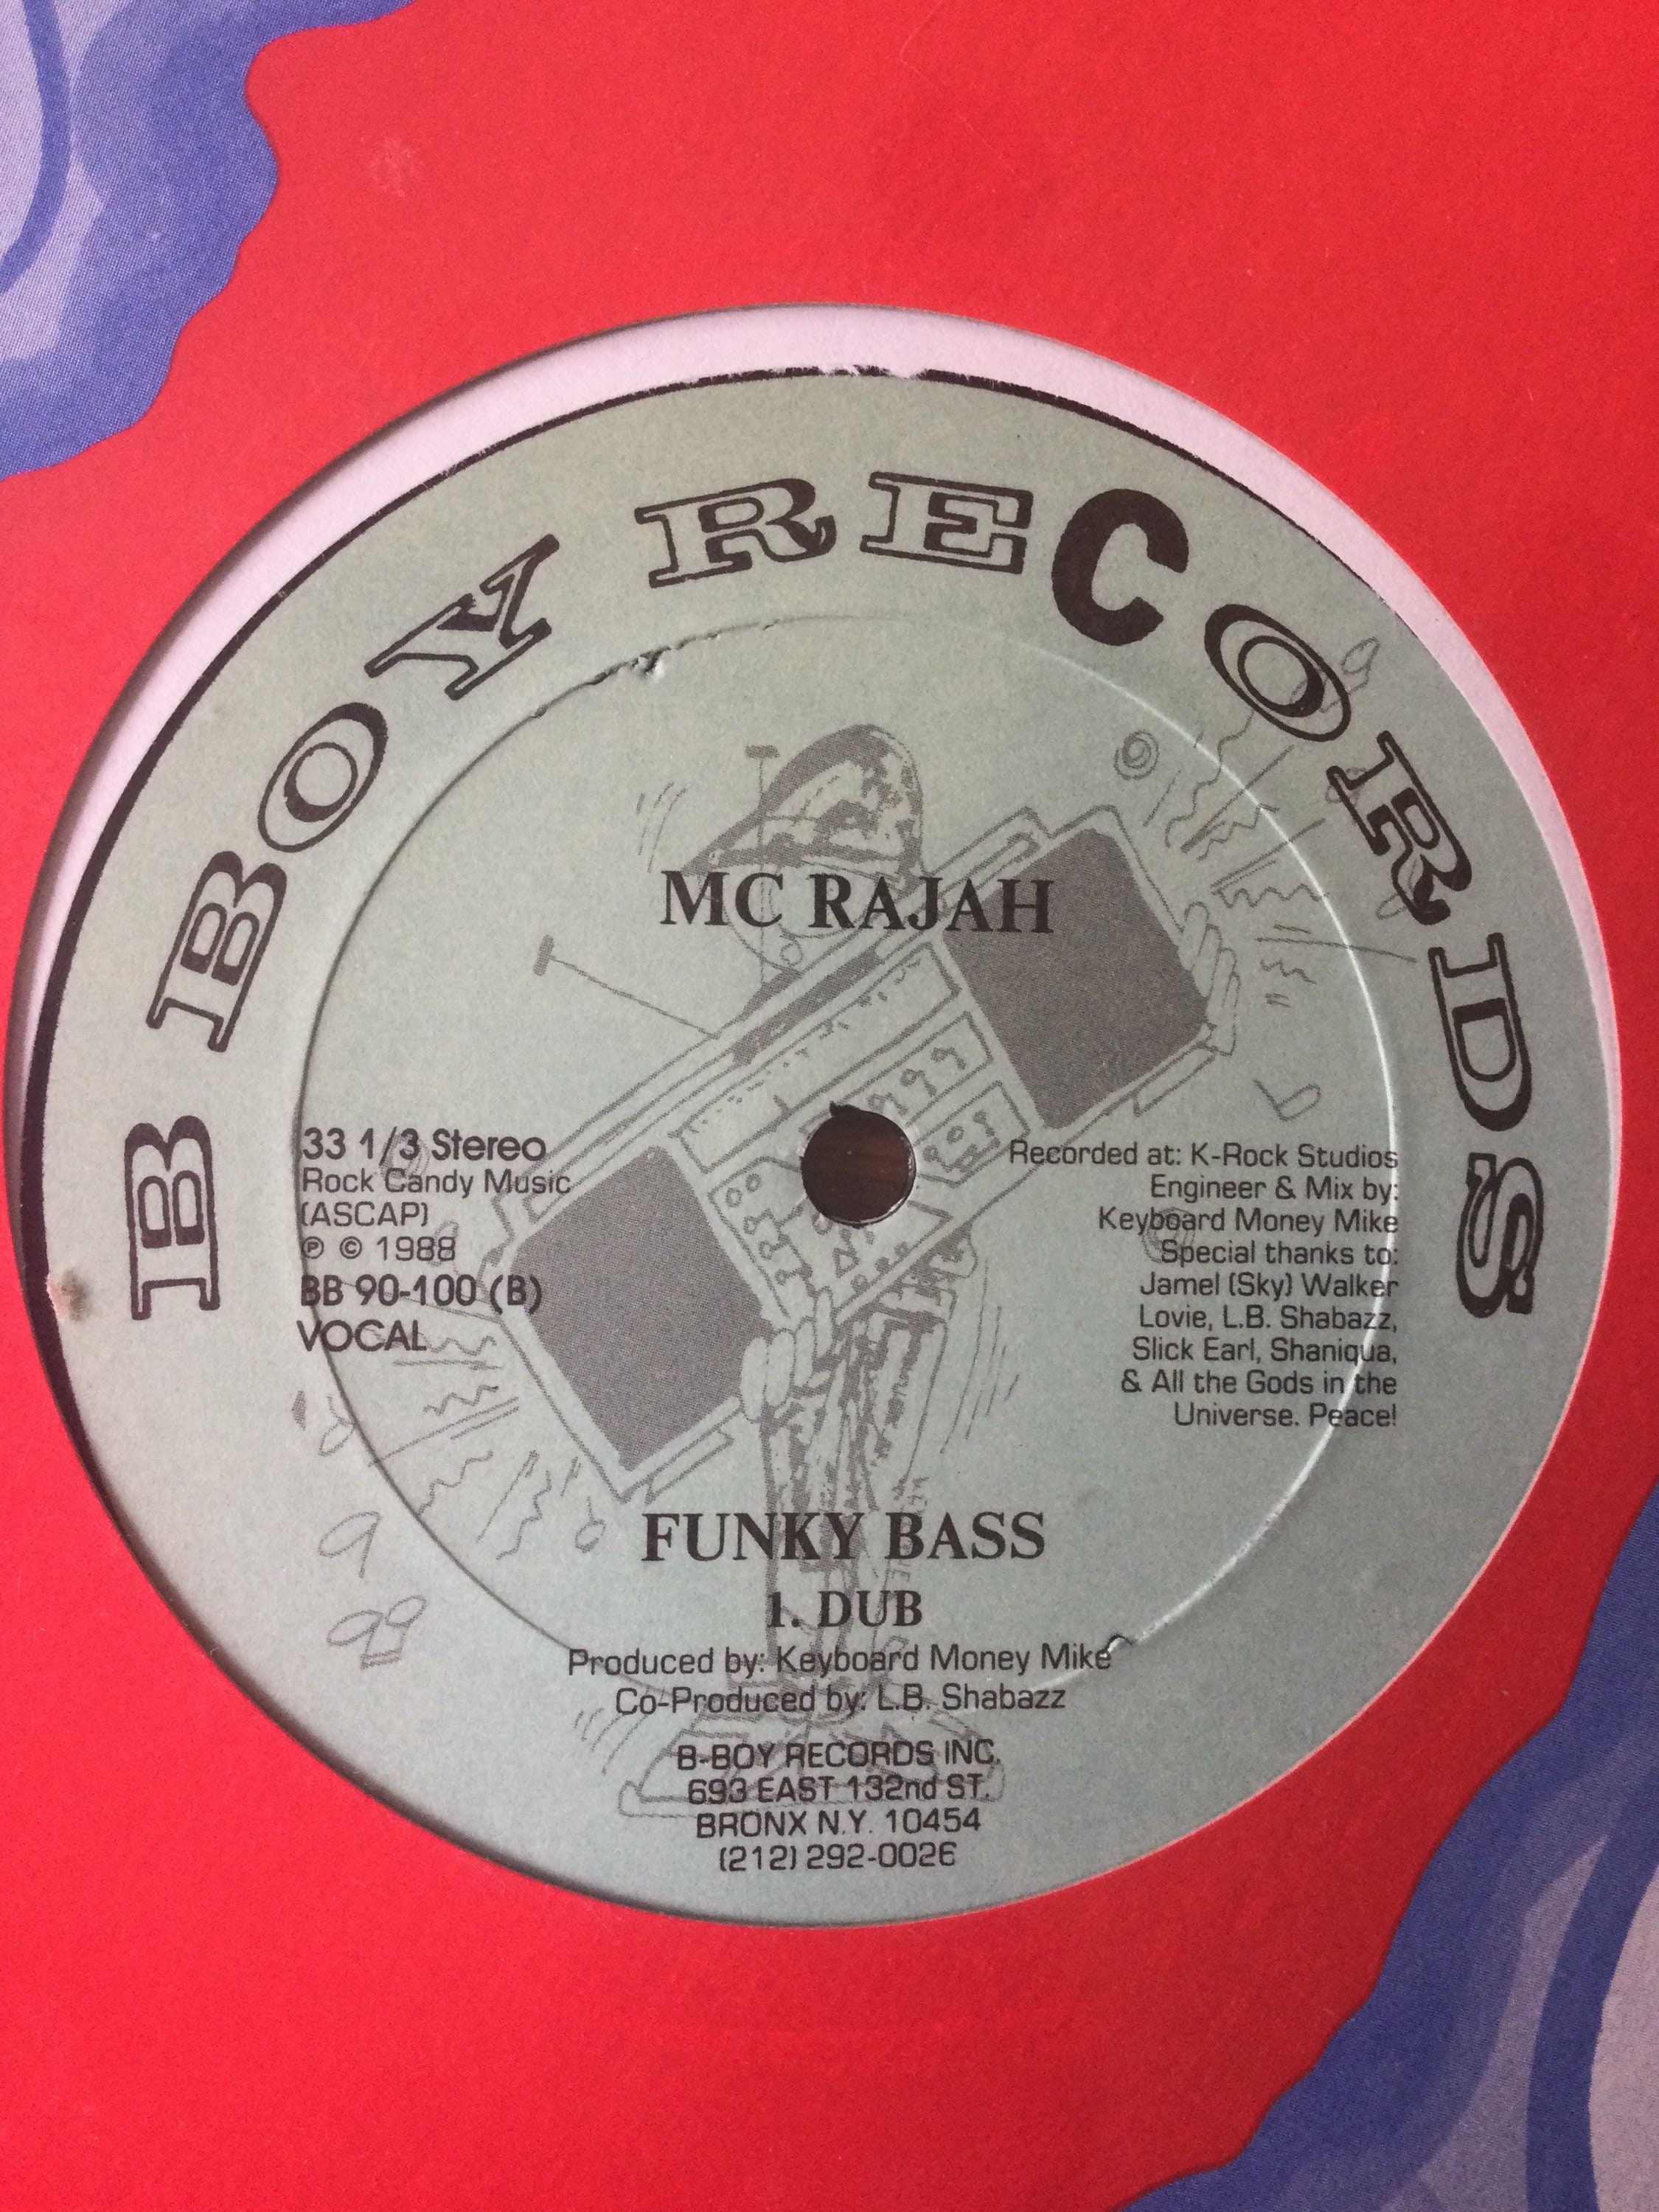 MC Rajah - Funky Bass